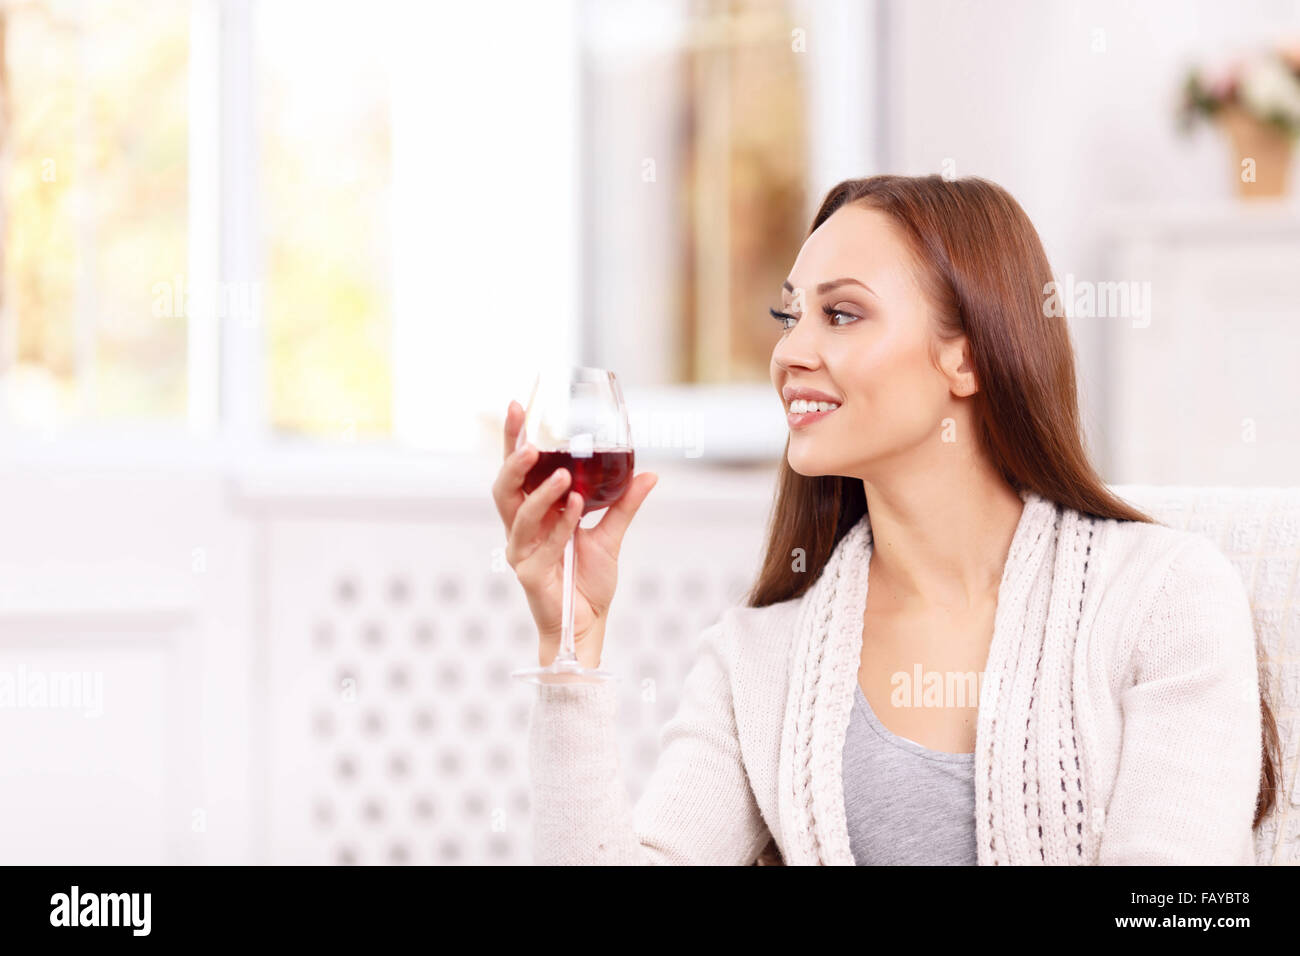 Attraktive junge Dame, ein Glas Wein zu genießen. Stockfoto